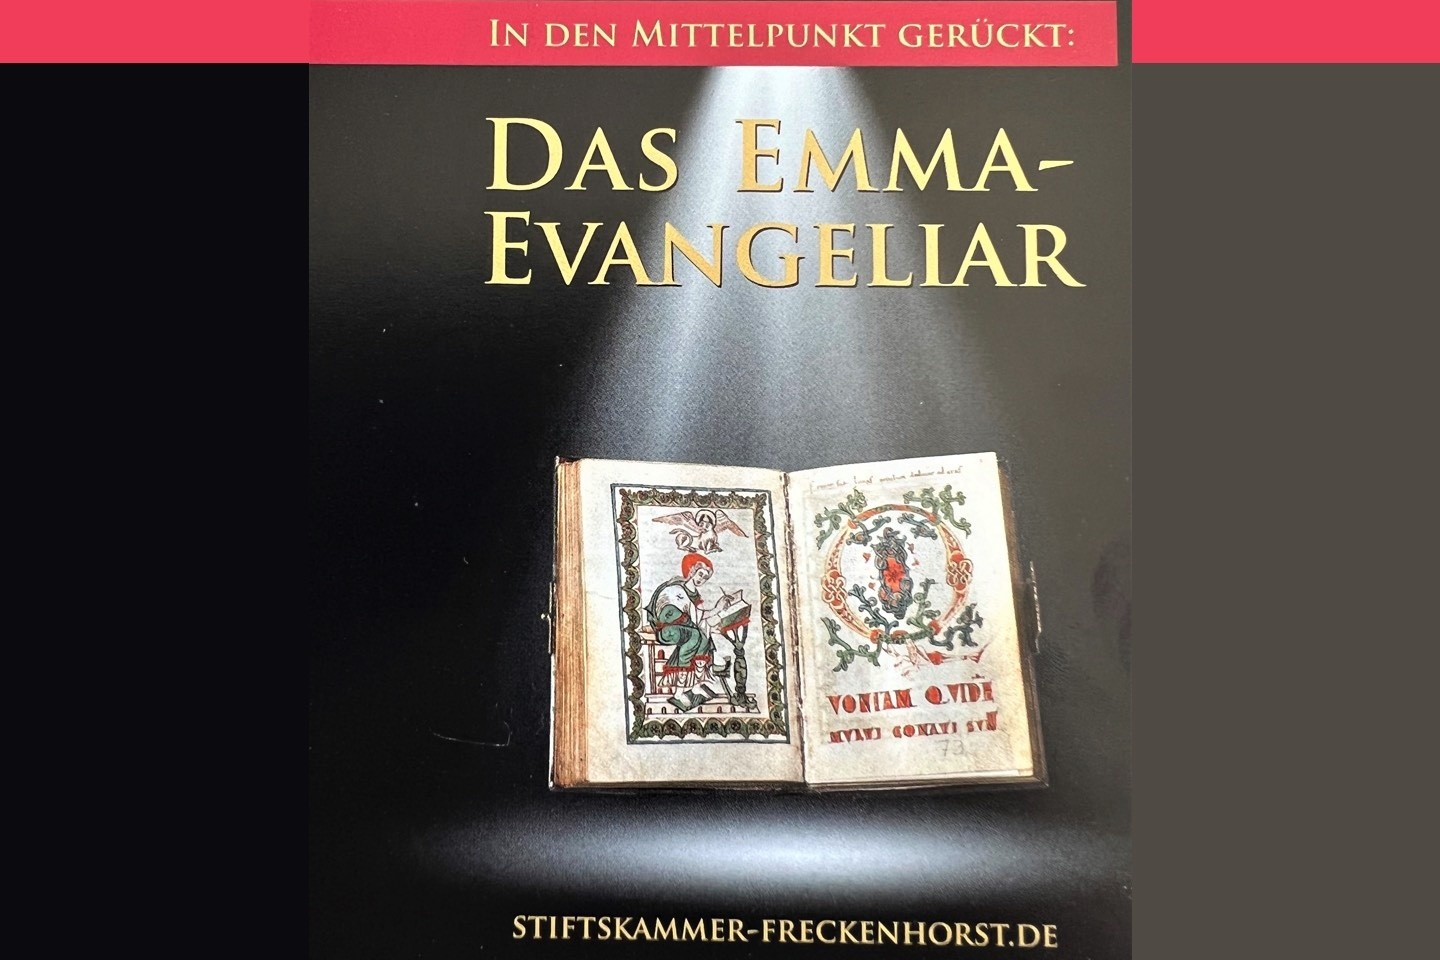 In den Mittelpunkt gerückt – das Emma-Evangeliar